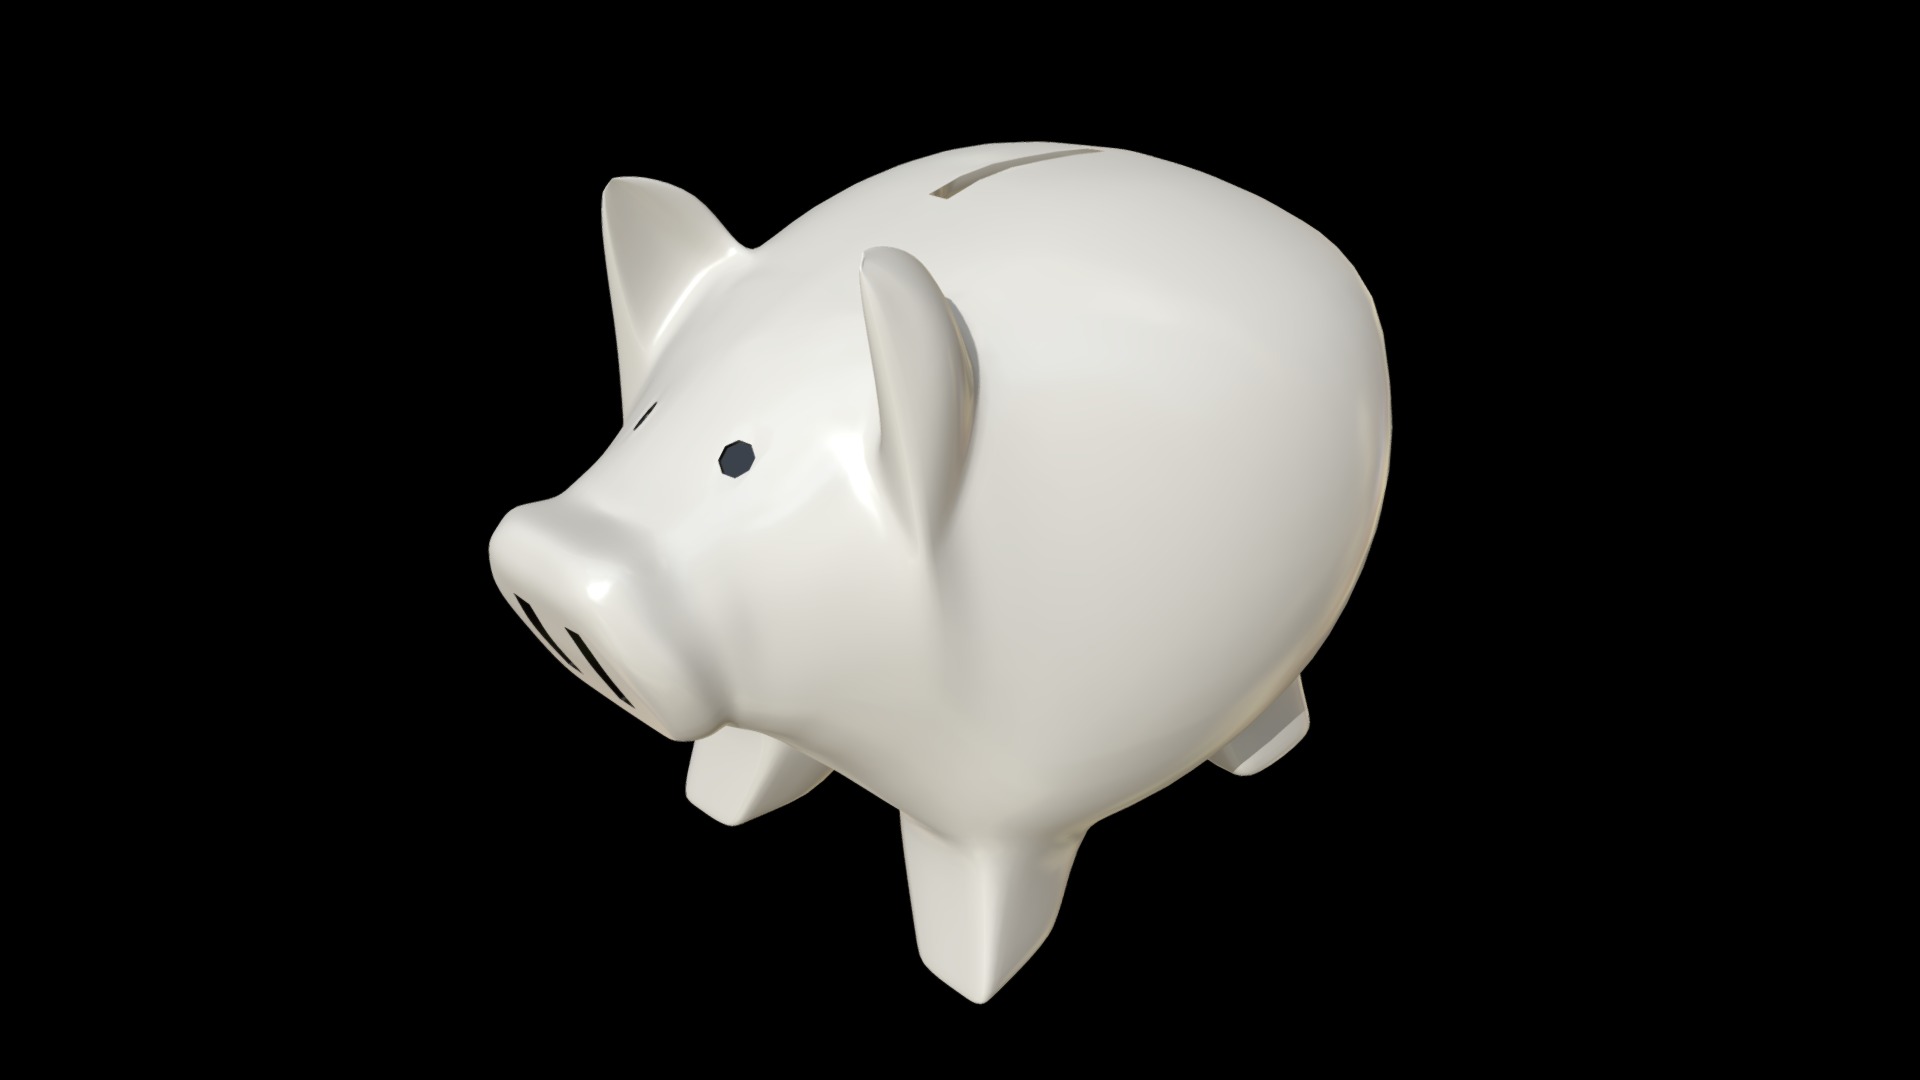 3D model Piggy bank money box - This is a 3D model of the Piggy bank money box. The 3D model is about a white piggy bank.